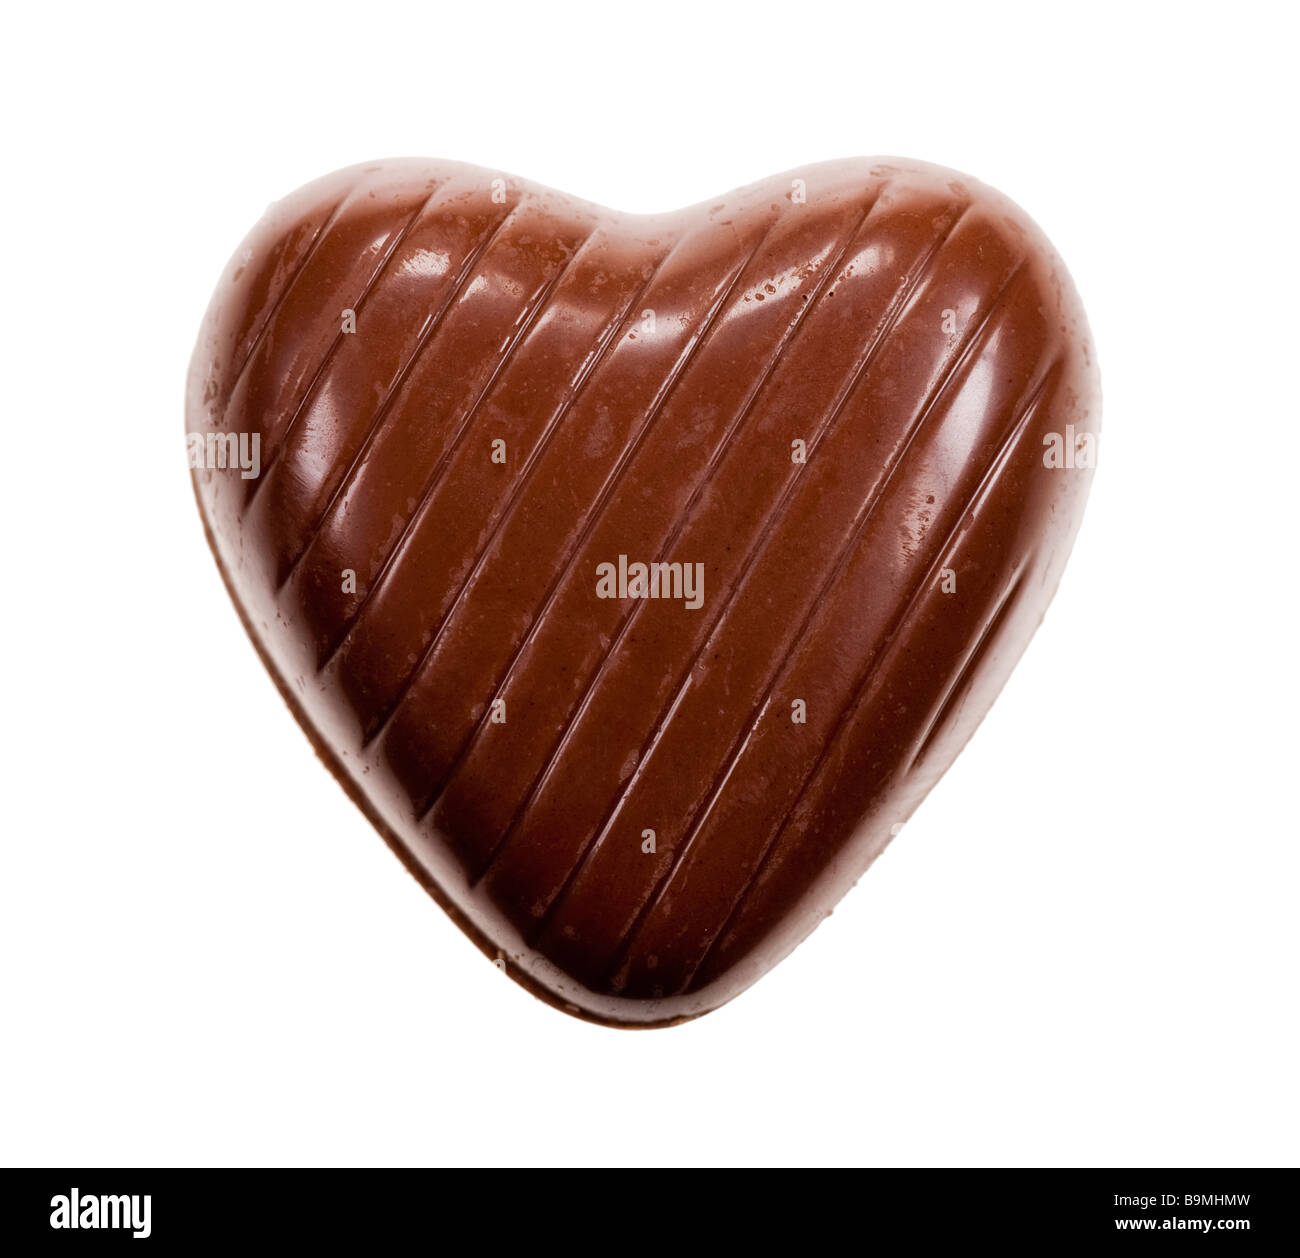 köstliche Schokolade isoliert auf einem weißen Hintergrund in Herzform Stockfoto